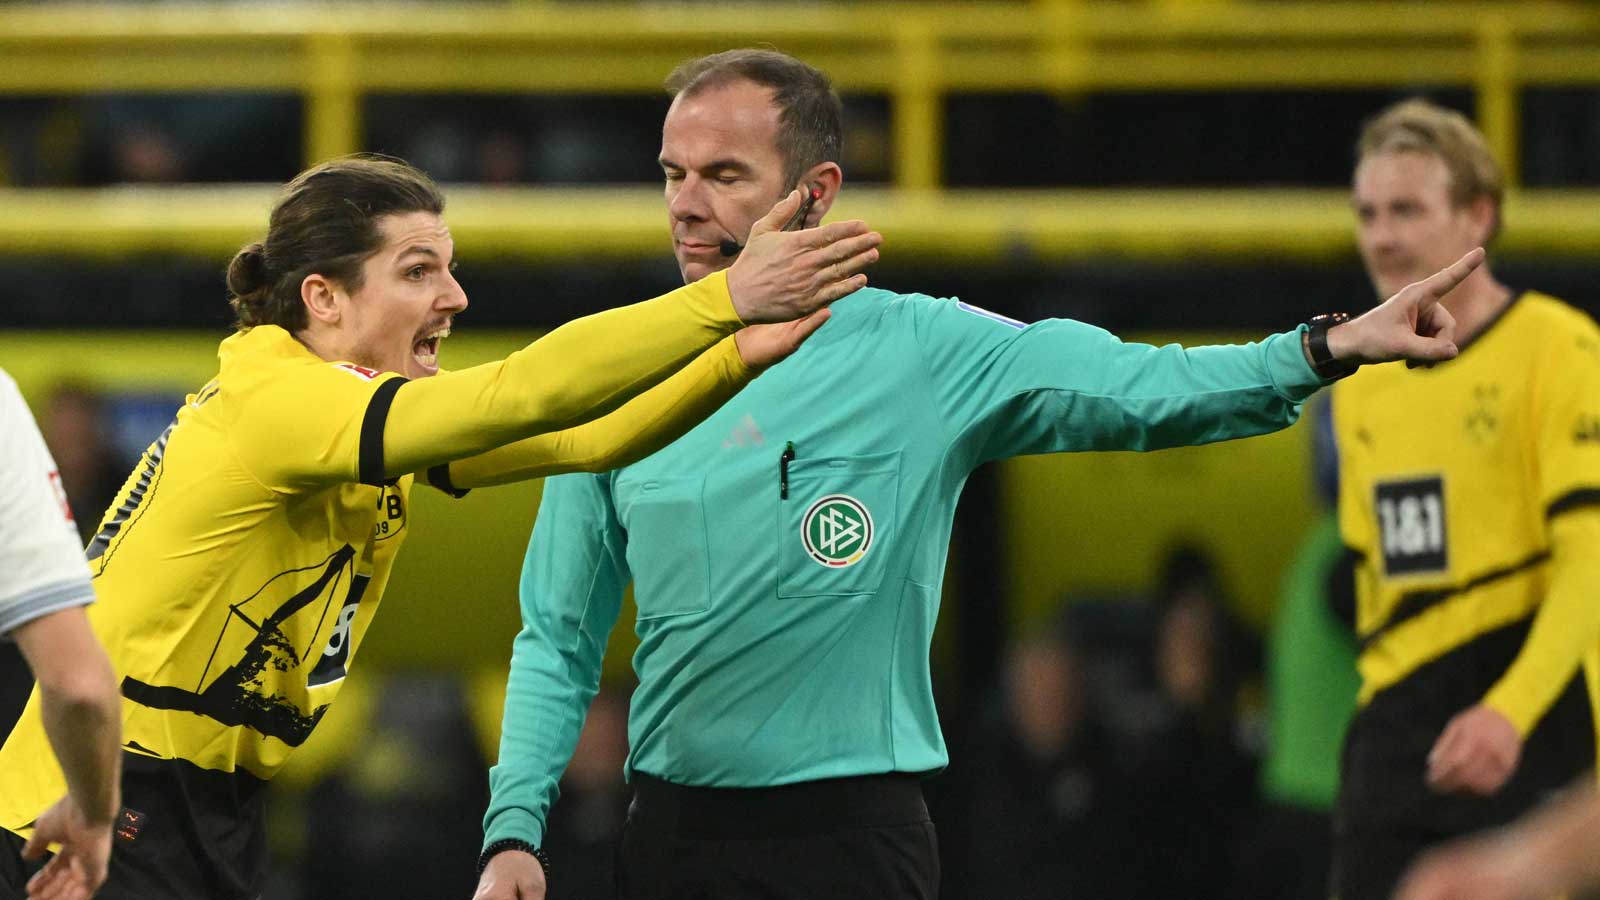 Strittige Szene bei Pleite von BVB: Darum hat Borussia Dortmund keinen Handelfmeter bekommen